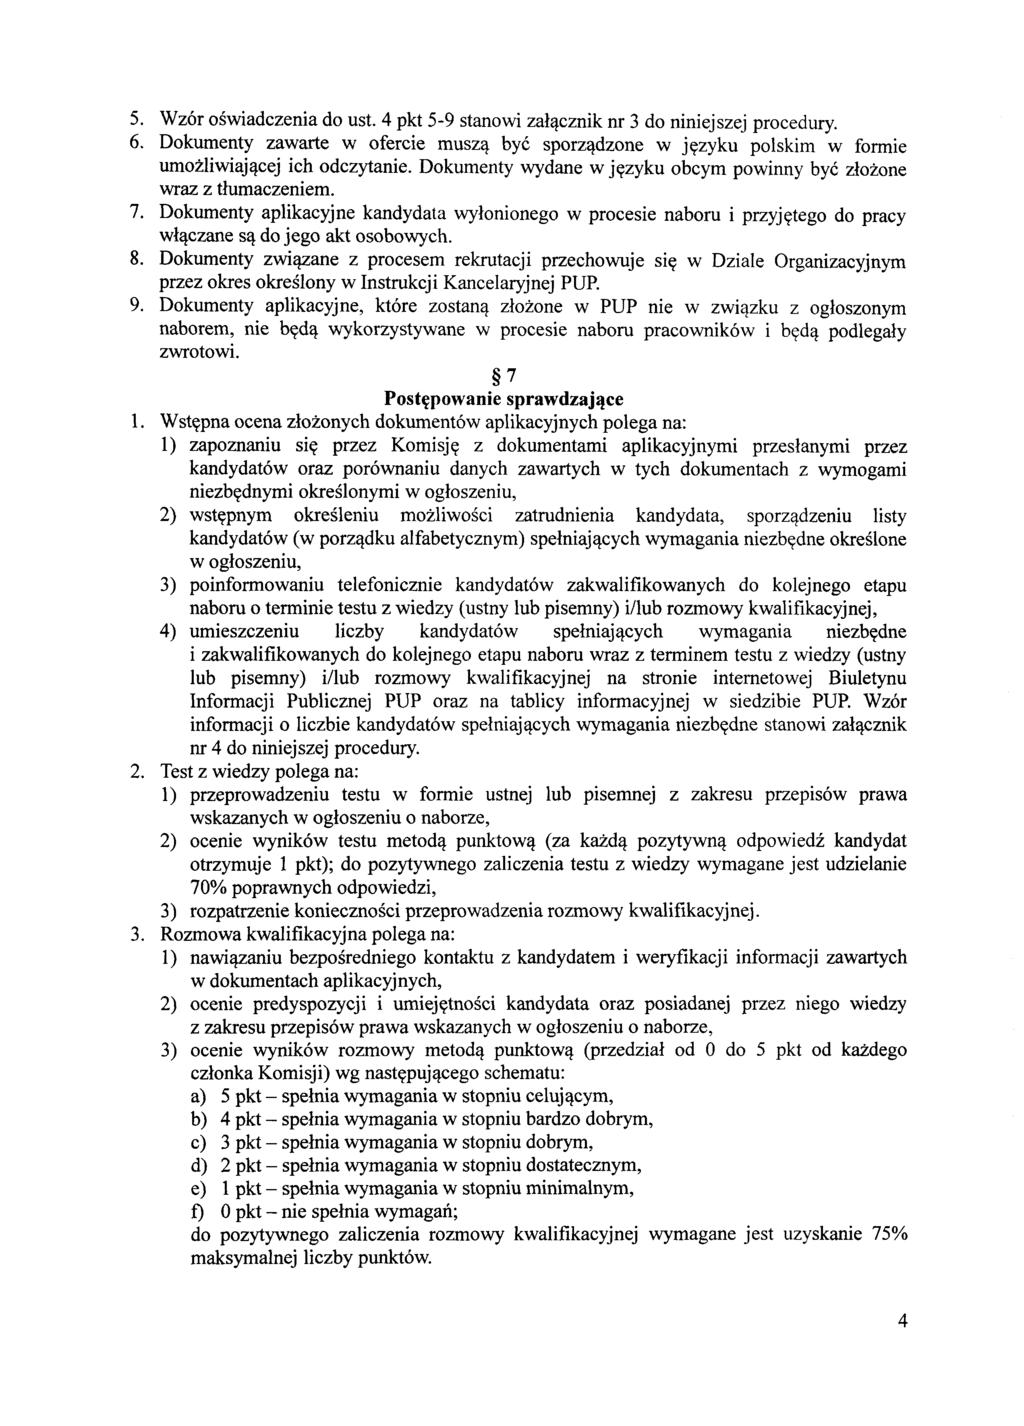 5. Wzór oświadczenia do ust. 4 pkt 5-9 stanowi załącznik nr 3 do niniejszej procedury. 6. Dokumenty zawarte w ofercie muszą być sporządzone w języku polskim w formie umożliwiającej ich odczytanie.